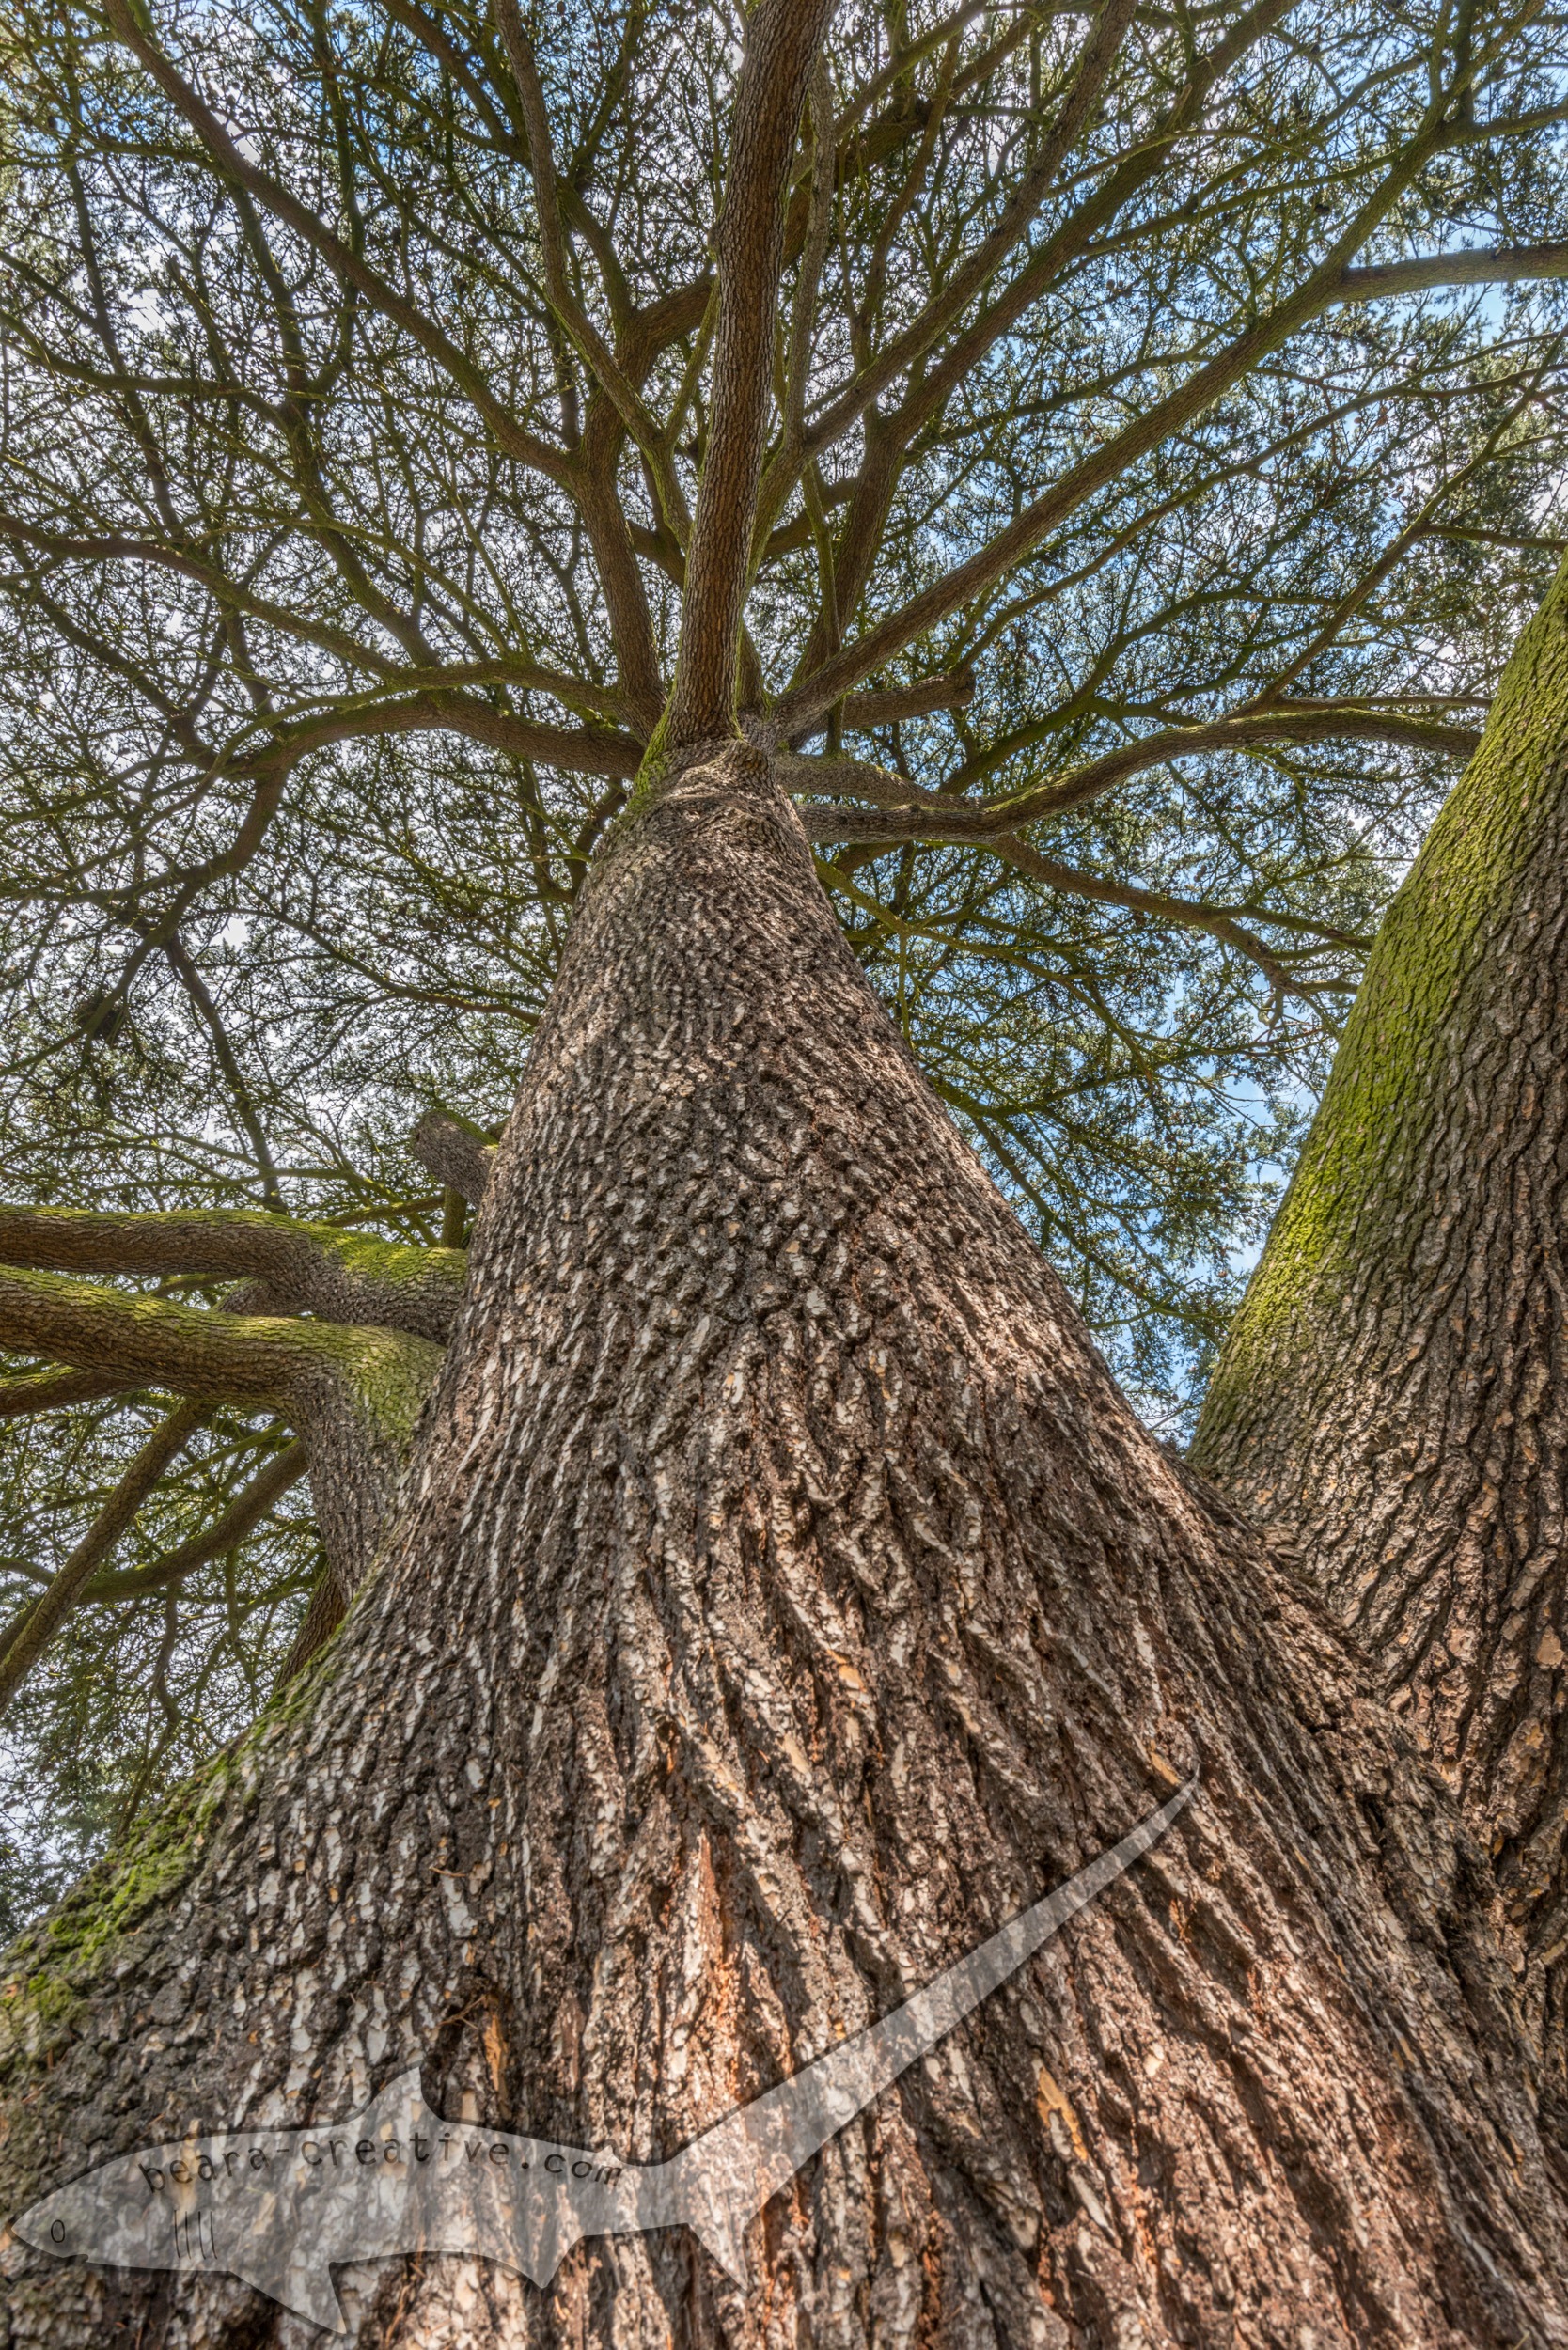 Tree bark and canopy